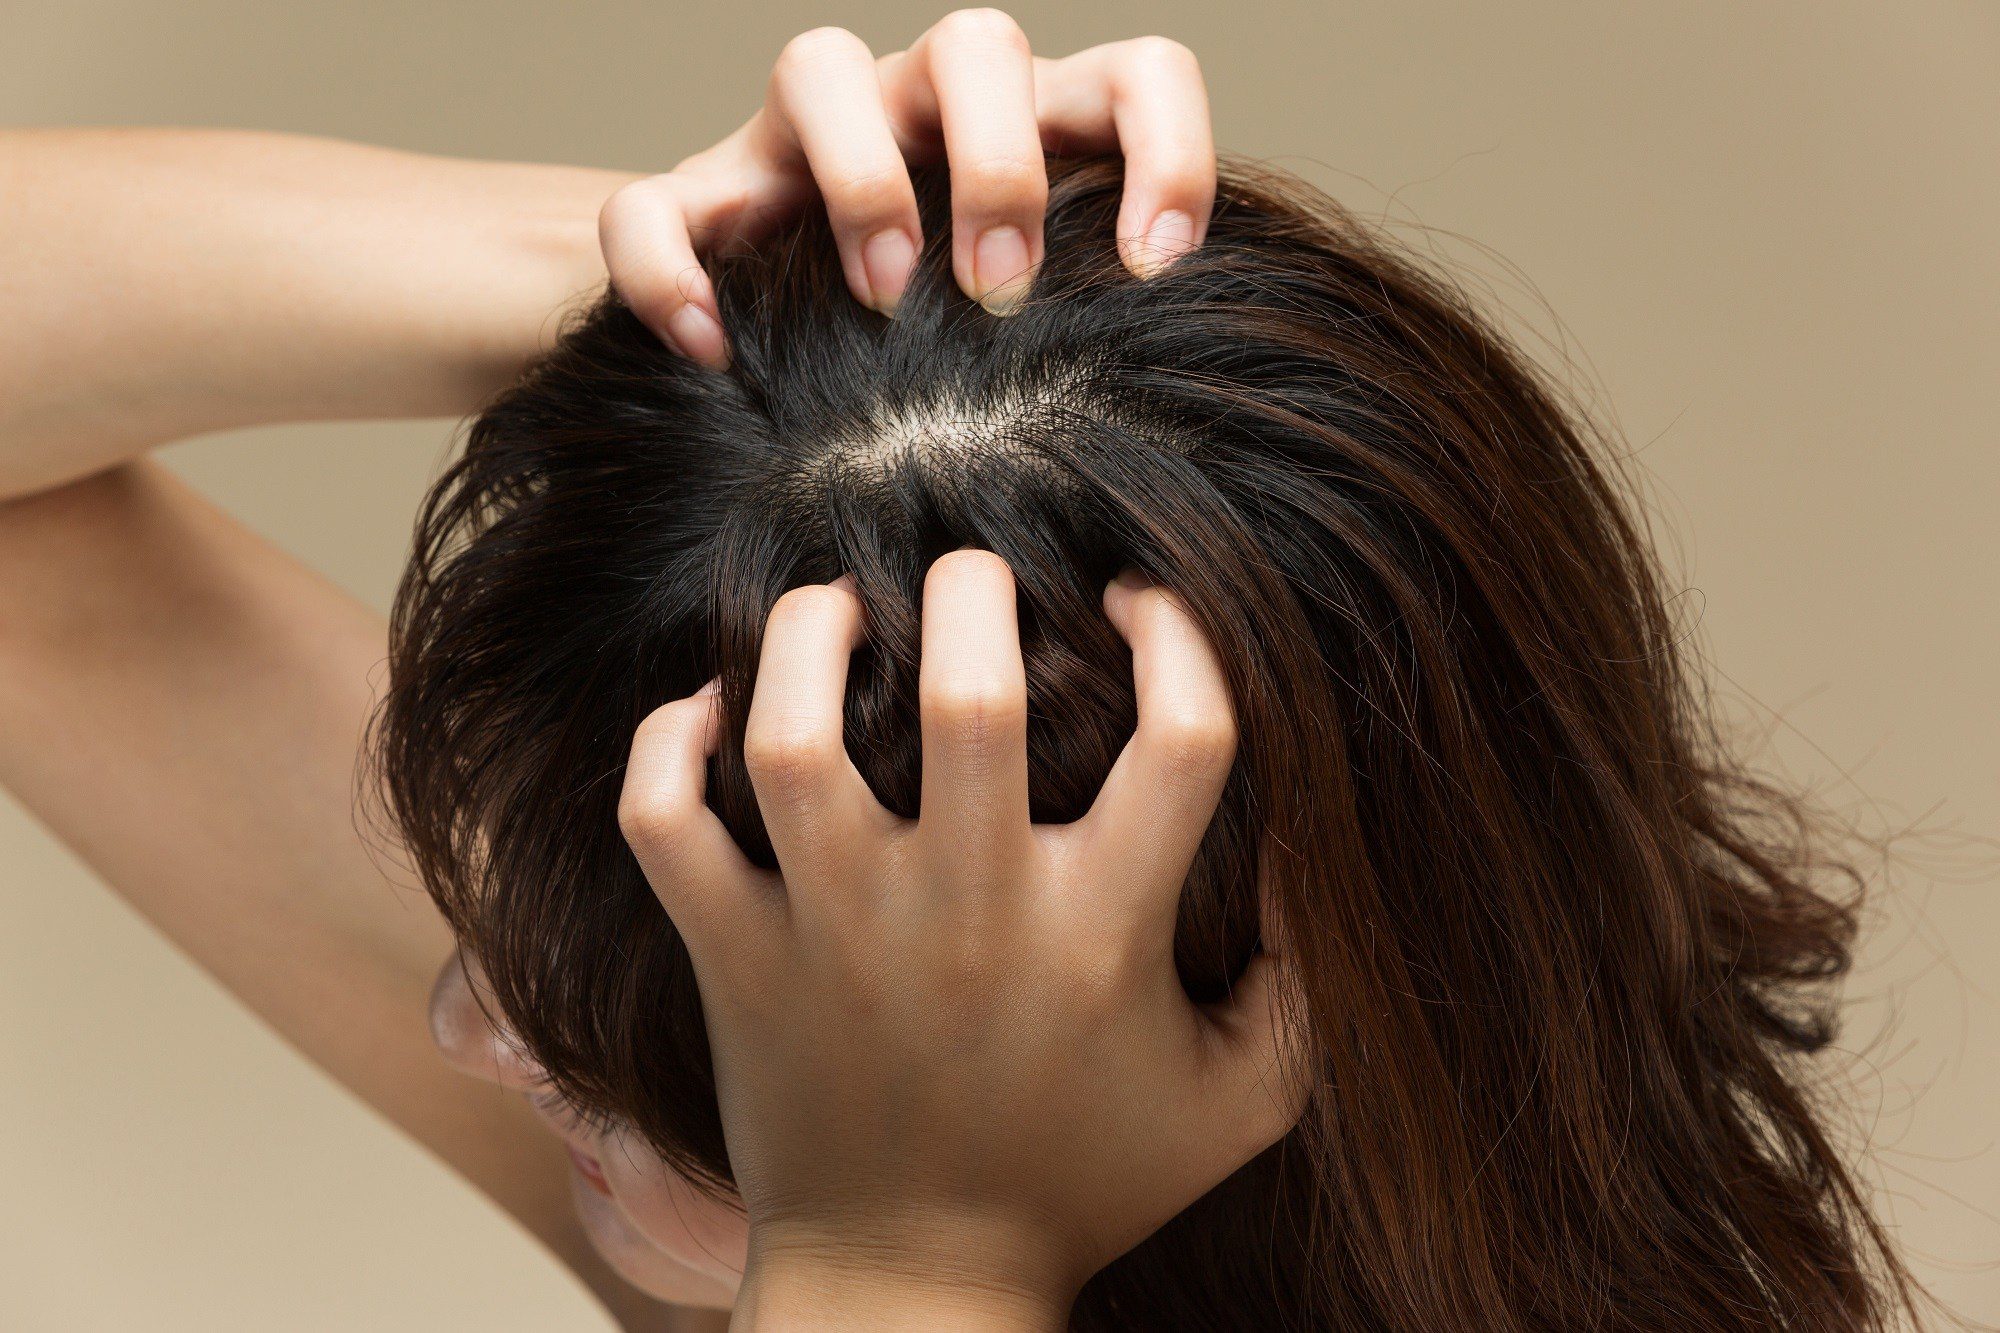 Manfaat Pijat Kulit Kepala Untuk Mempercepat Pertumbuhan Rambut